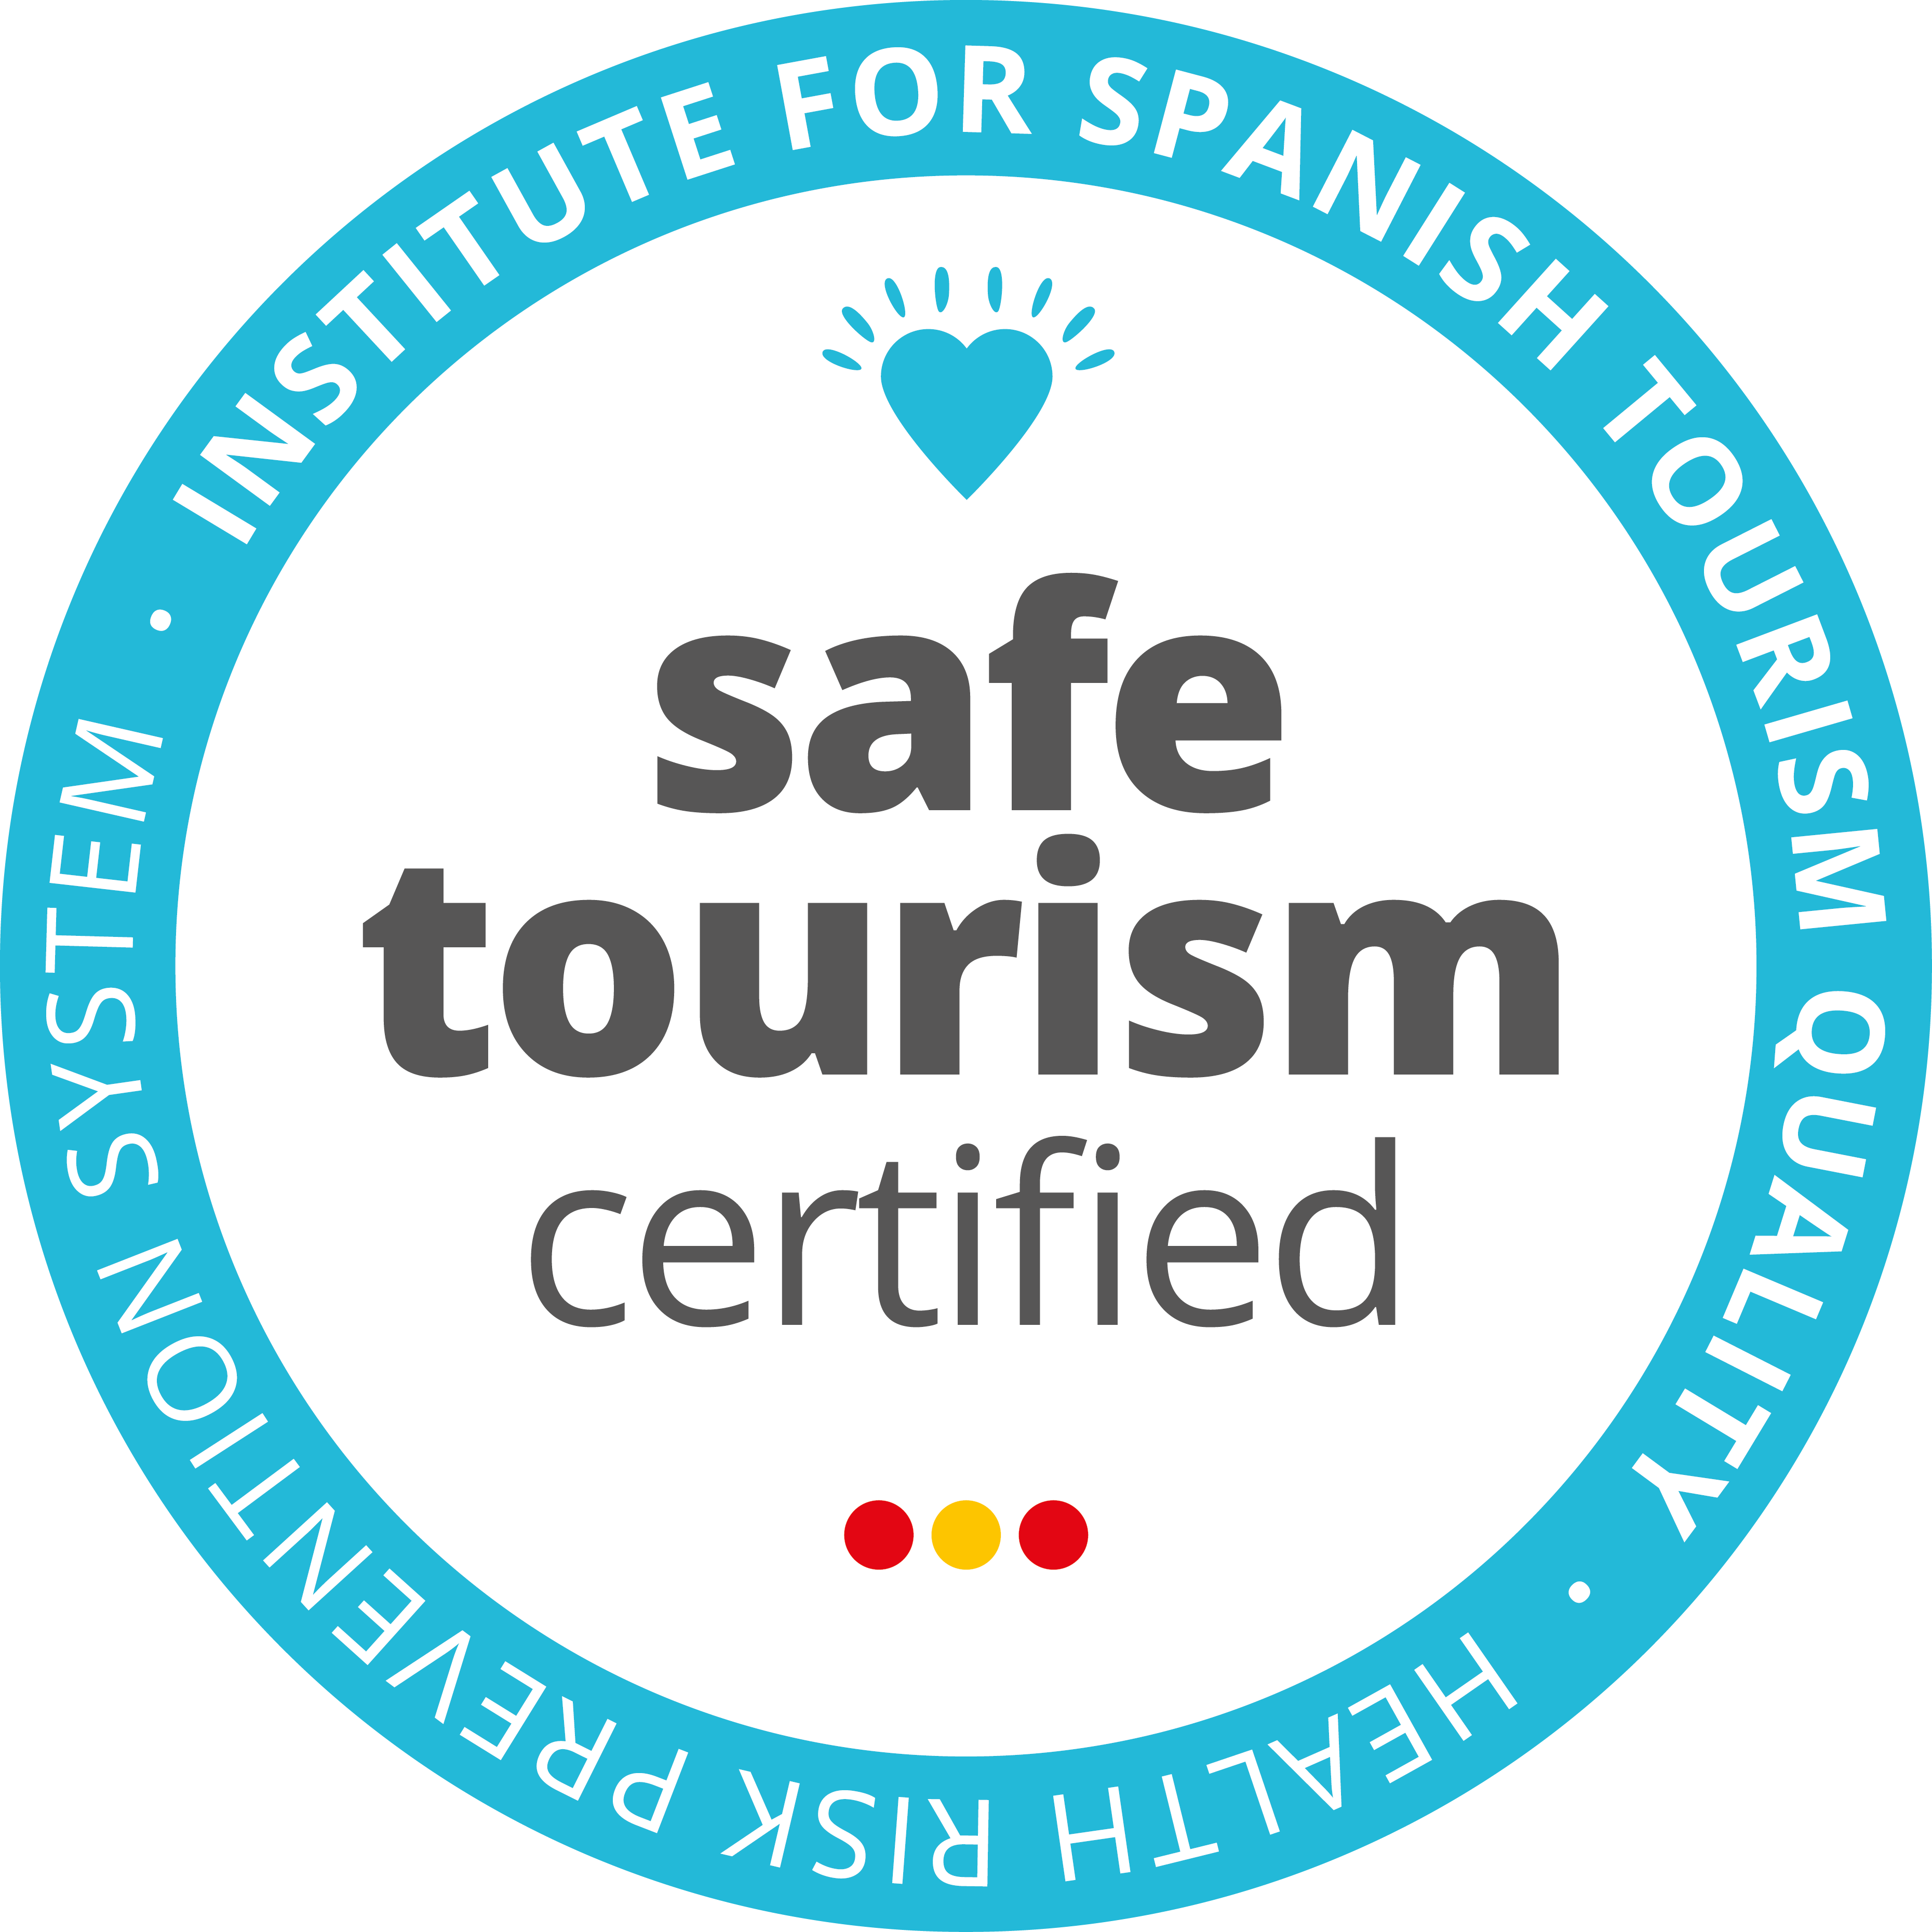 La Oficina de Turismo de Avilés recibe el Certificado de Turismo Seguro